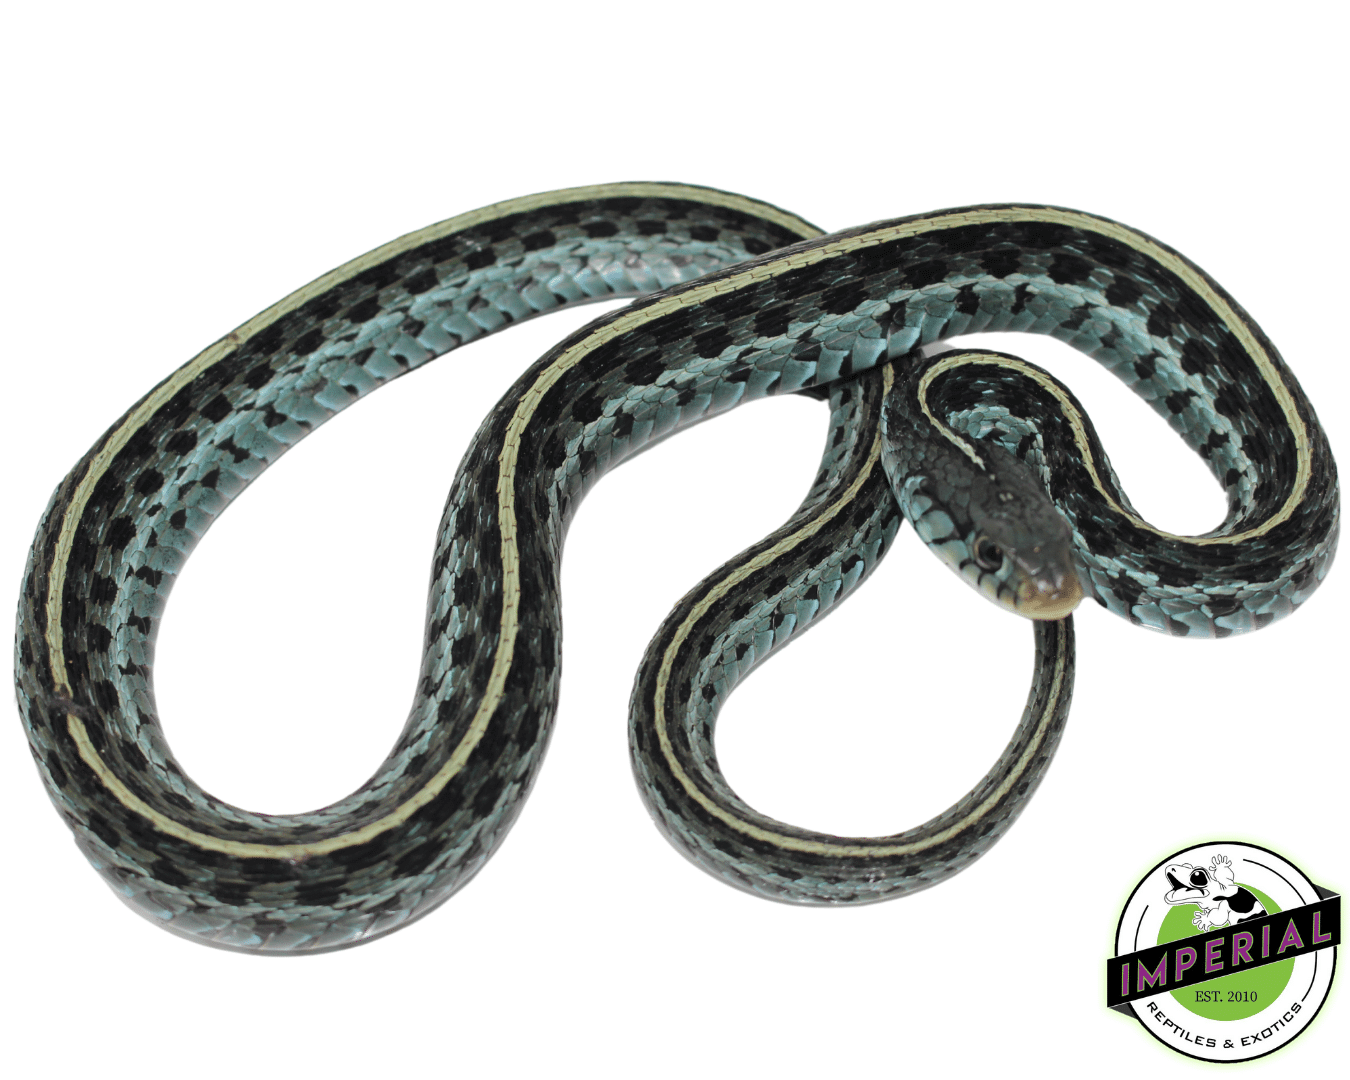 blue garter snake for sale, buy reptiles online